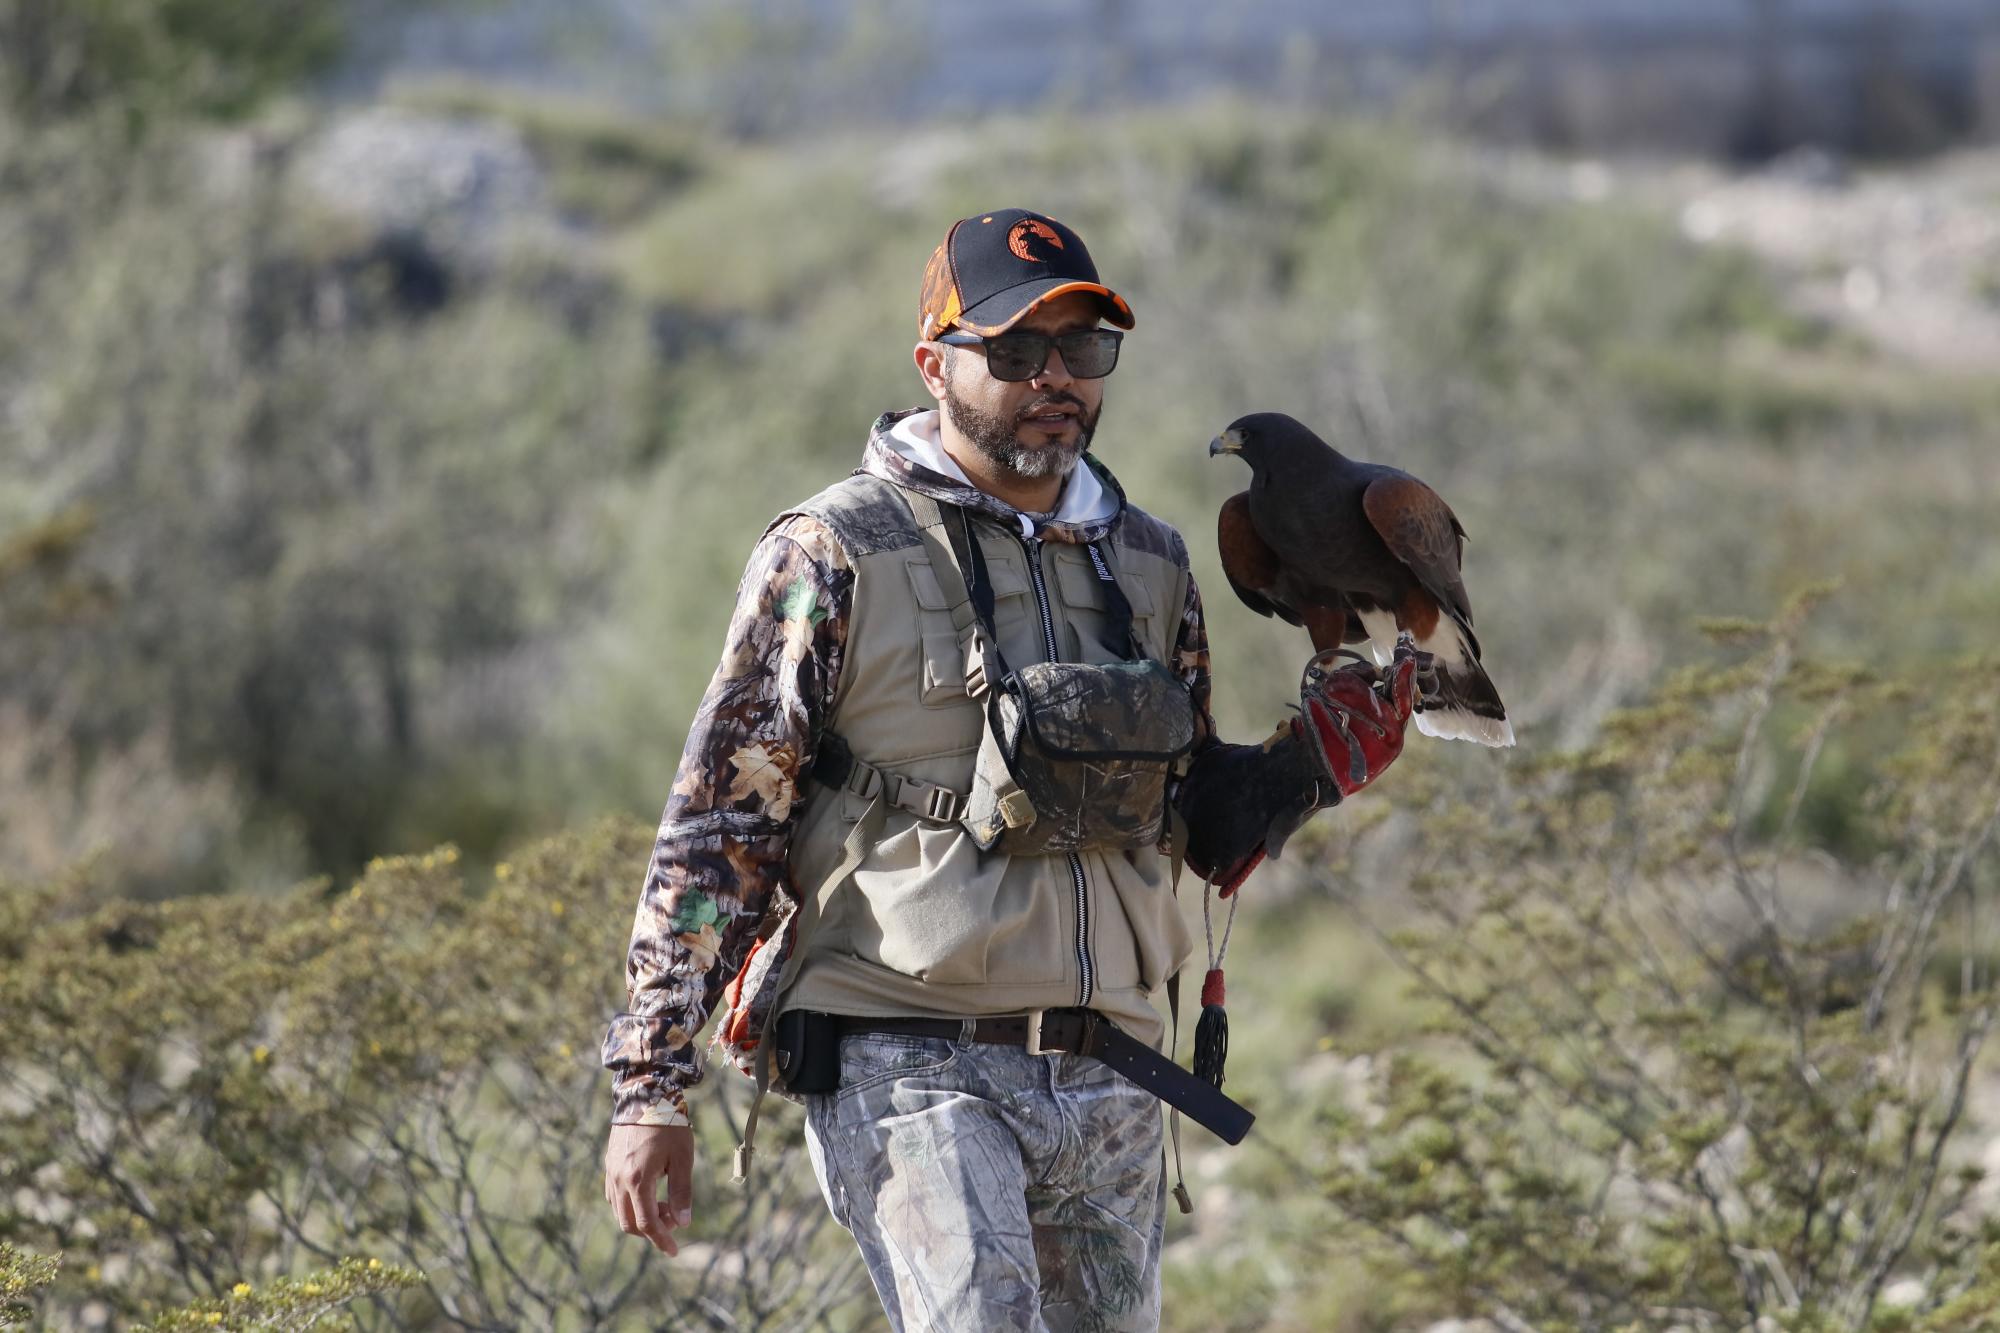 $!Un cetrero cuidadosamente sostiene a su ave mientras se prepara para soltarla y permitirle cazar en su entorno natural.